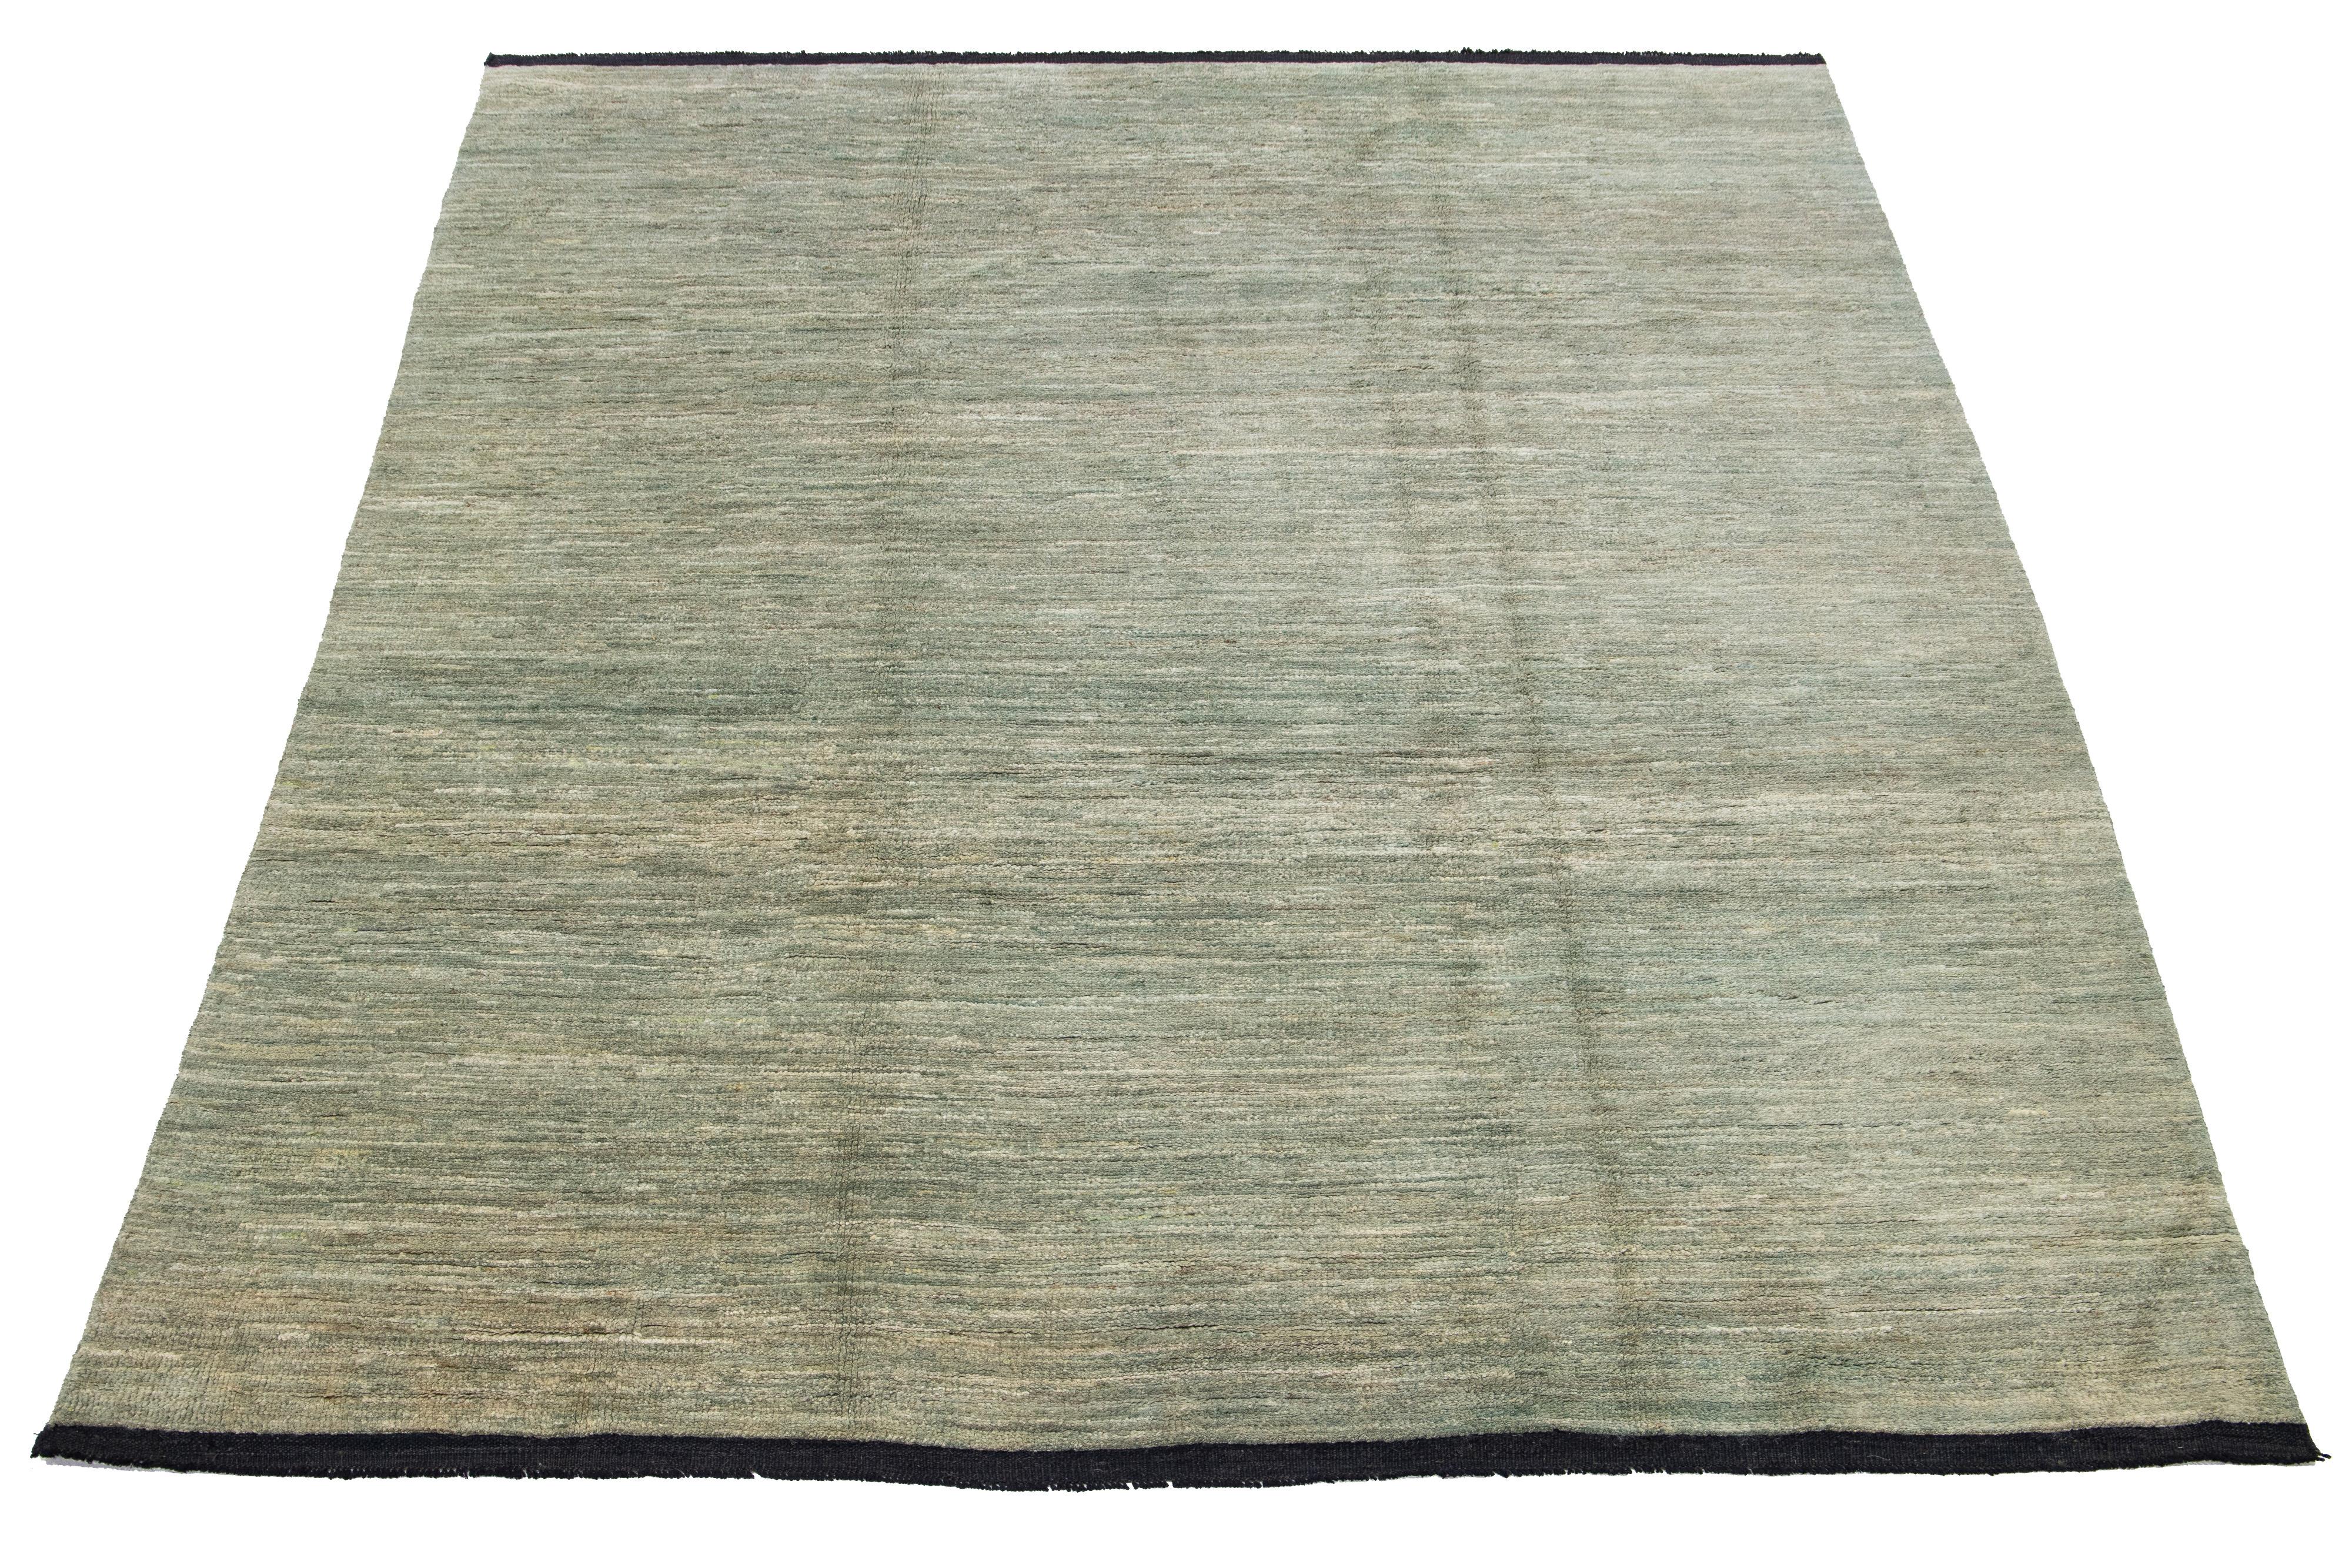 Dieser handgefertigte Wollteppich im Gabbeh-Stil zeigt ein unifarbenes Muster, das durch grüne Schattierungen vor einem leuchtenden beigen Hintergrund akzentuiert wird.

Dieser Teppich misst 7'9